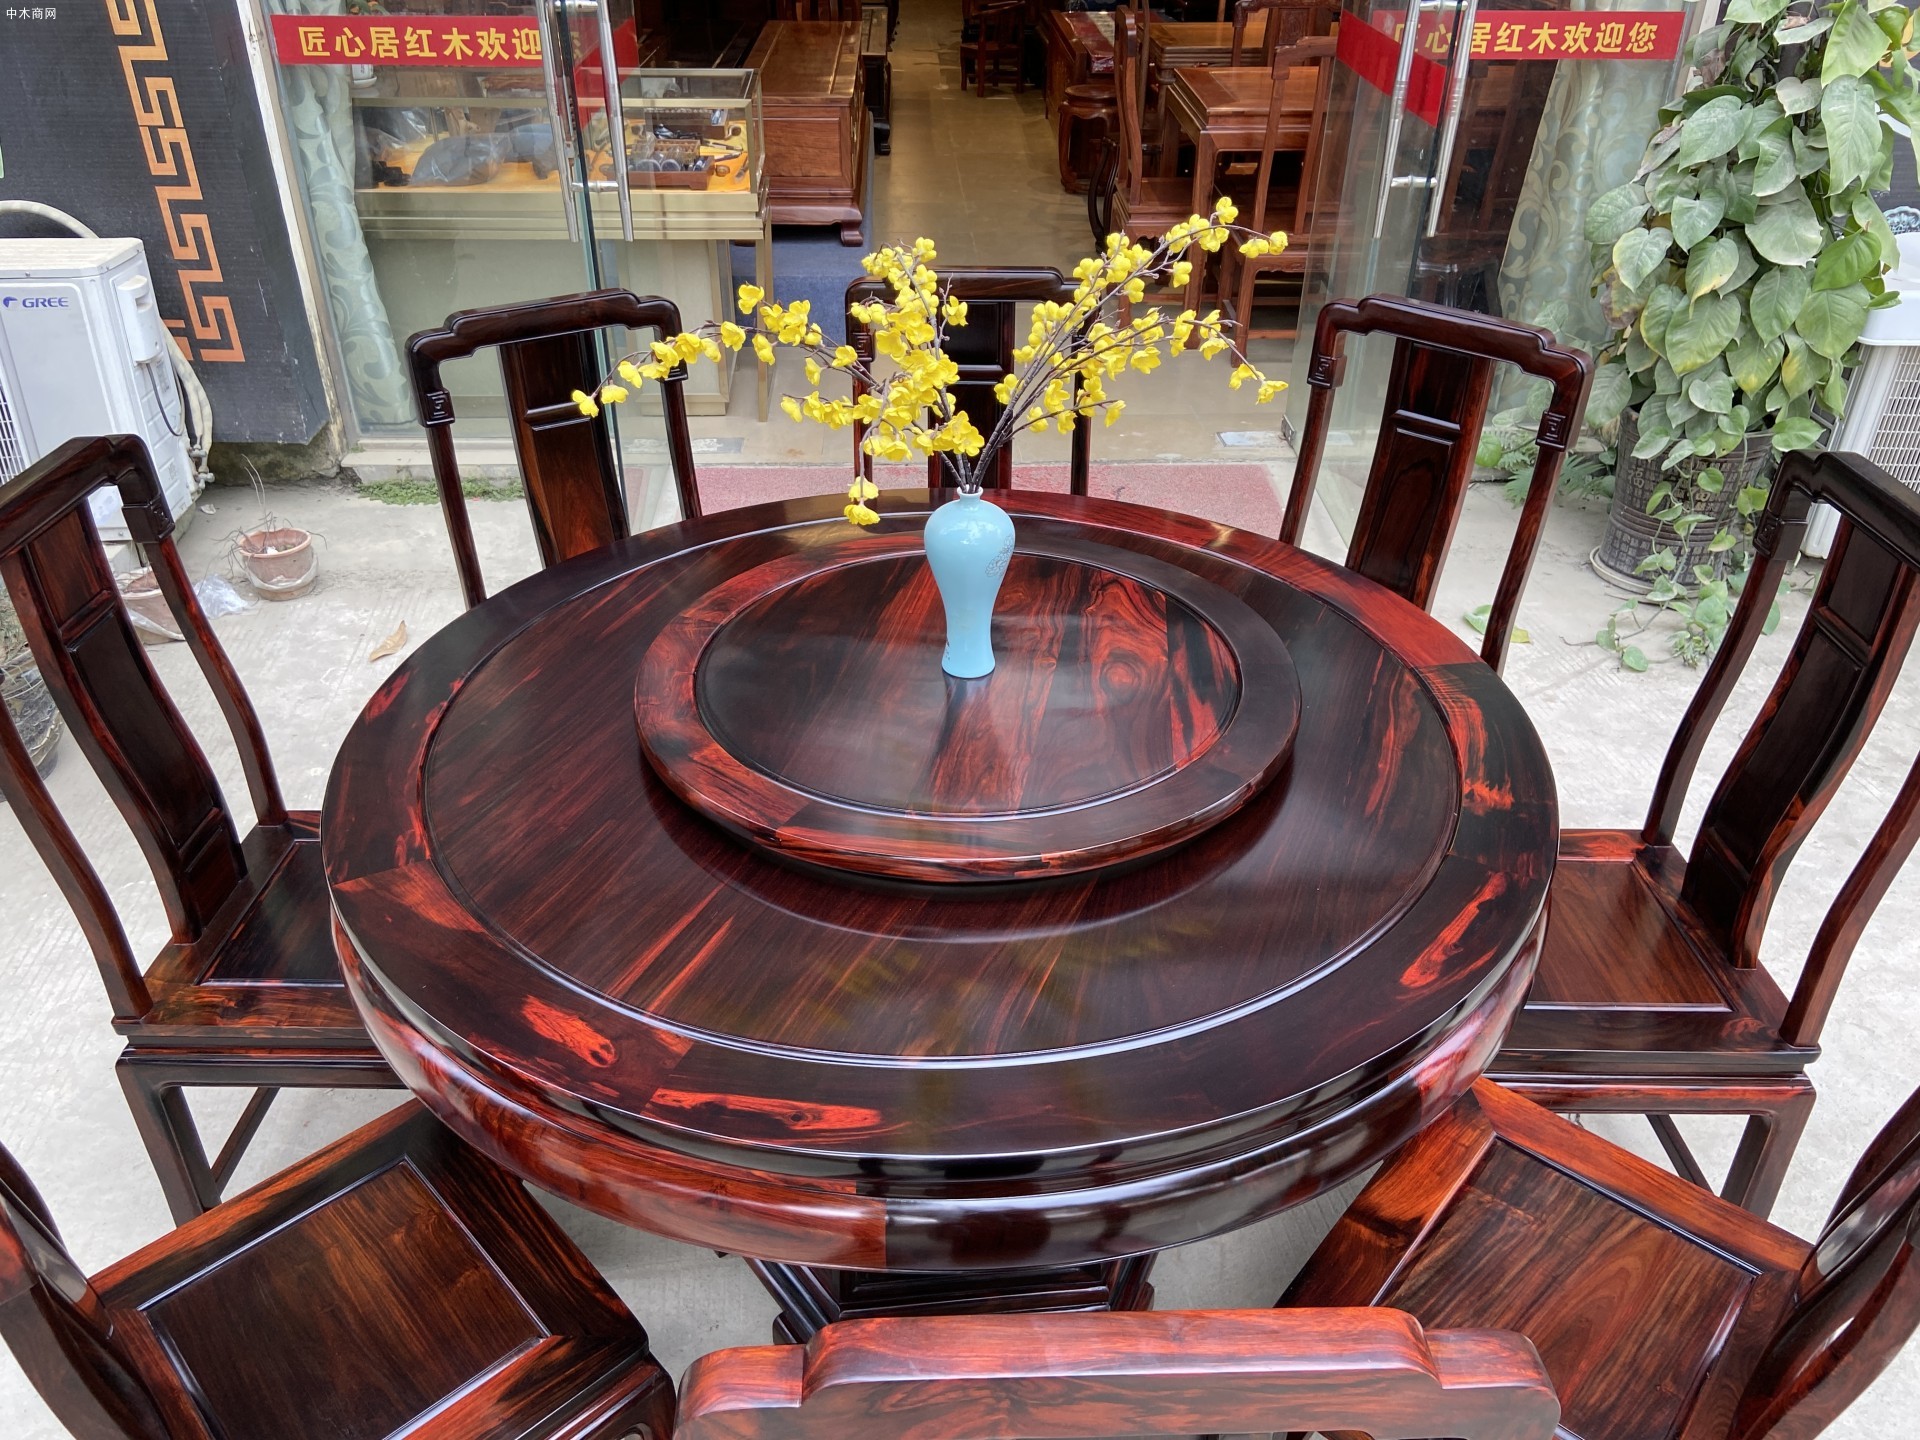 老挝大红酸枝餐桌用什么油擦最好批发